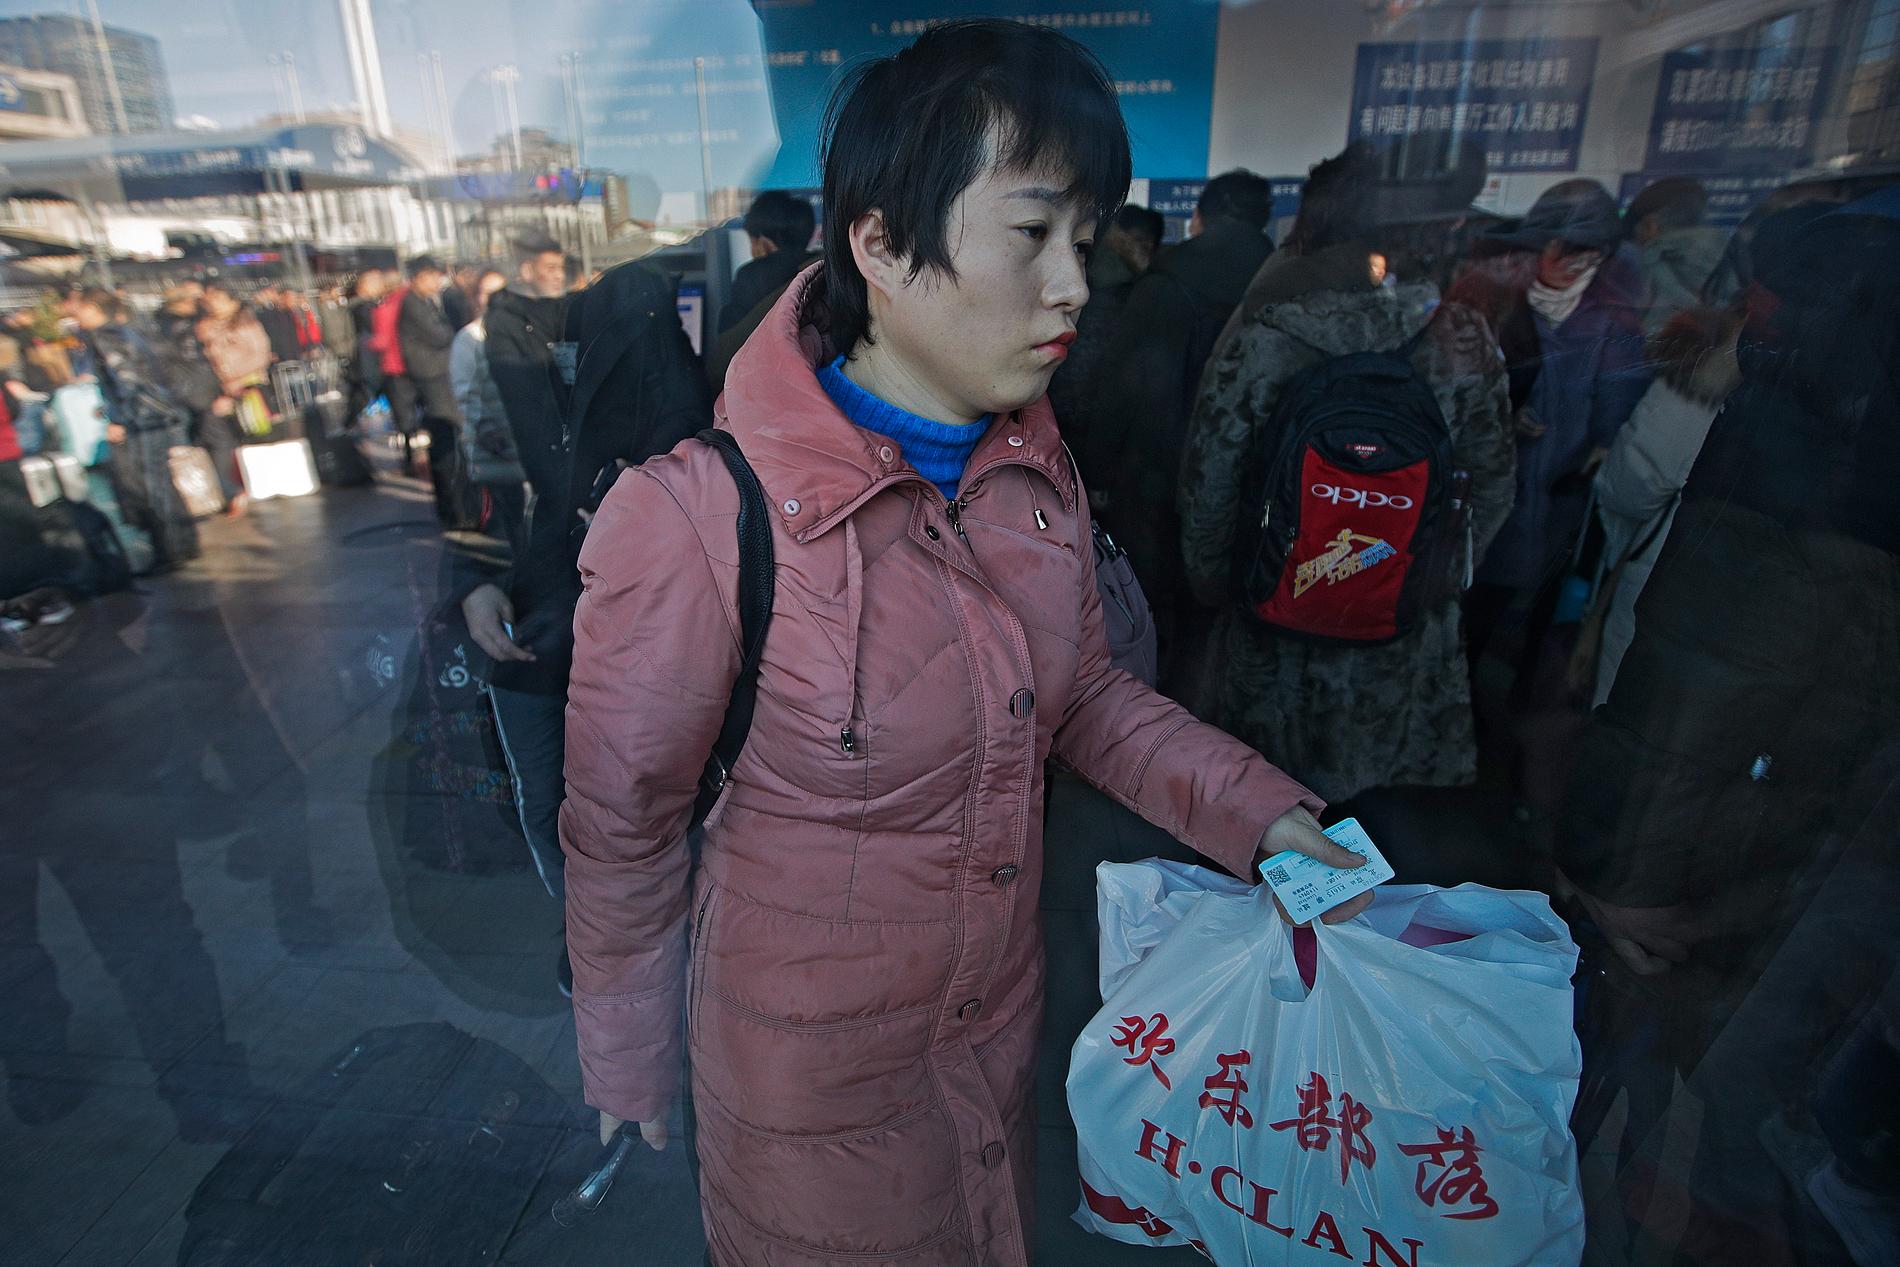 Den här veckan inleddes de restätaste dagarna på hela året i Kina, när miljoner kineser åker till sina hemorter och på semester för att fira nyåret. Det enorma resandet märks inte minst på centralstationen i Peking.